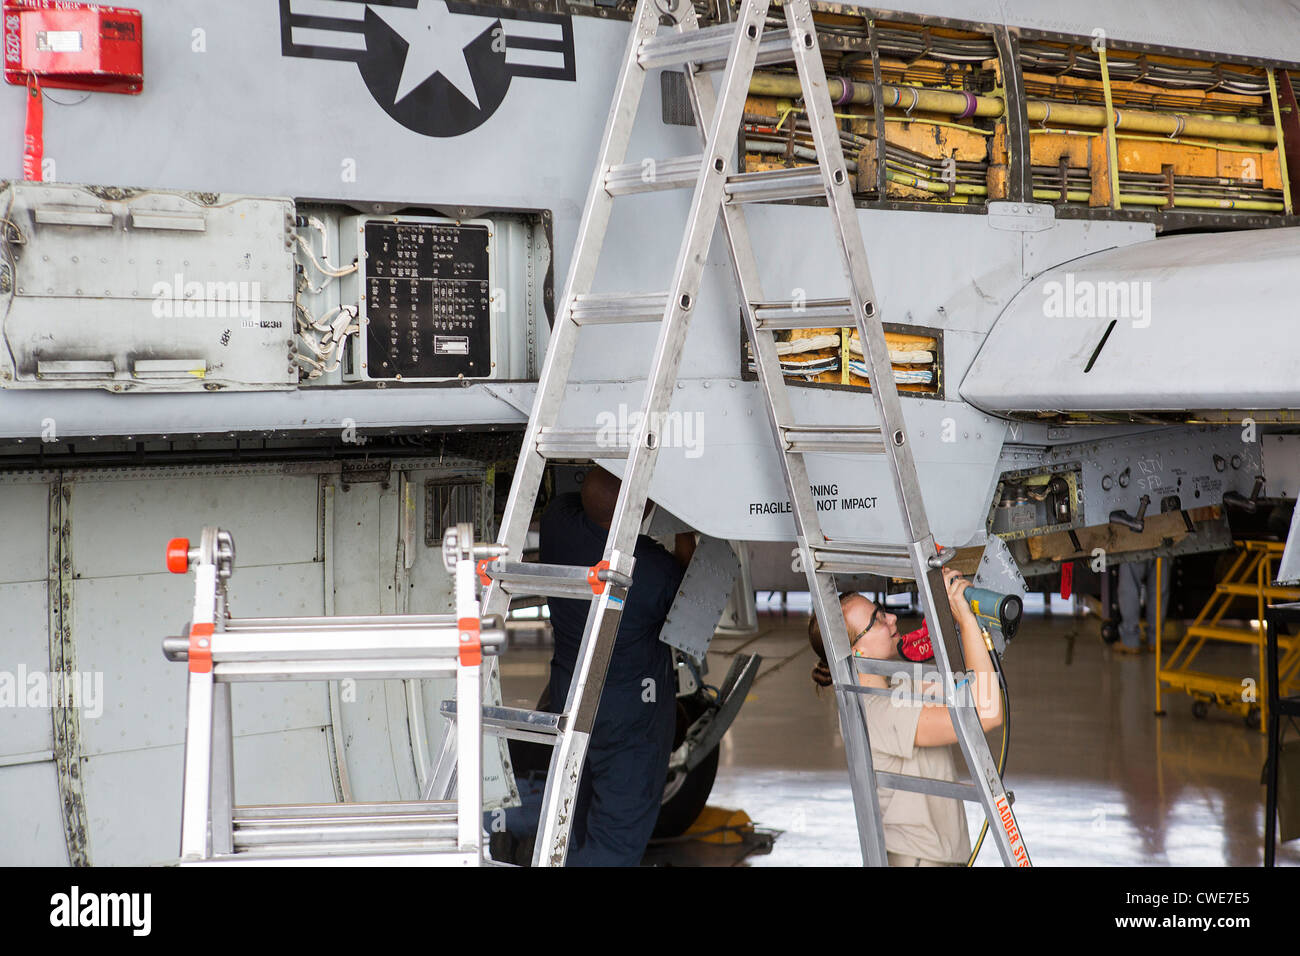 Aviateurs, effectuer des travaux de maintenance sur un A-10 Thunderbolt du 354e Escadron de chasse à la base aérienne Davis-Monthan Air Force Base. Banque D'Images